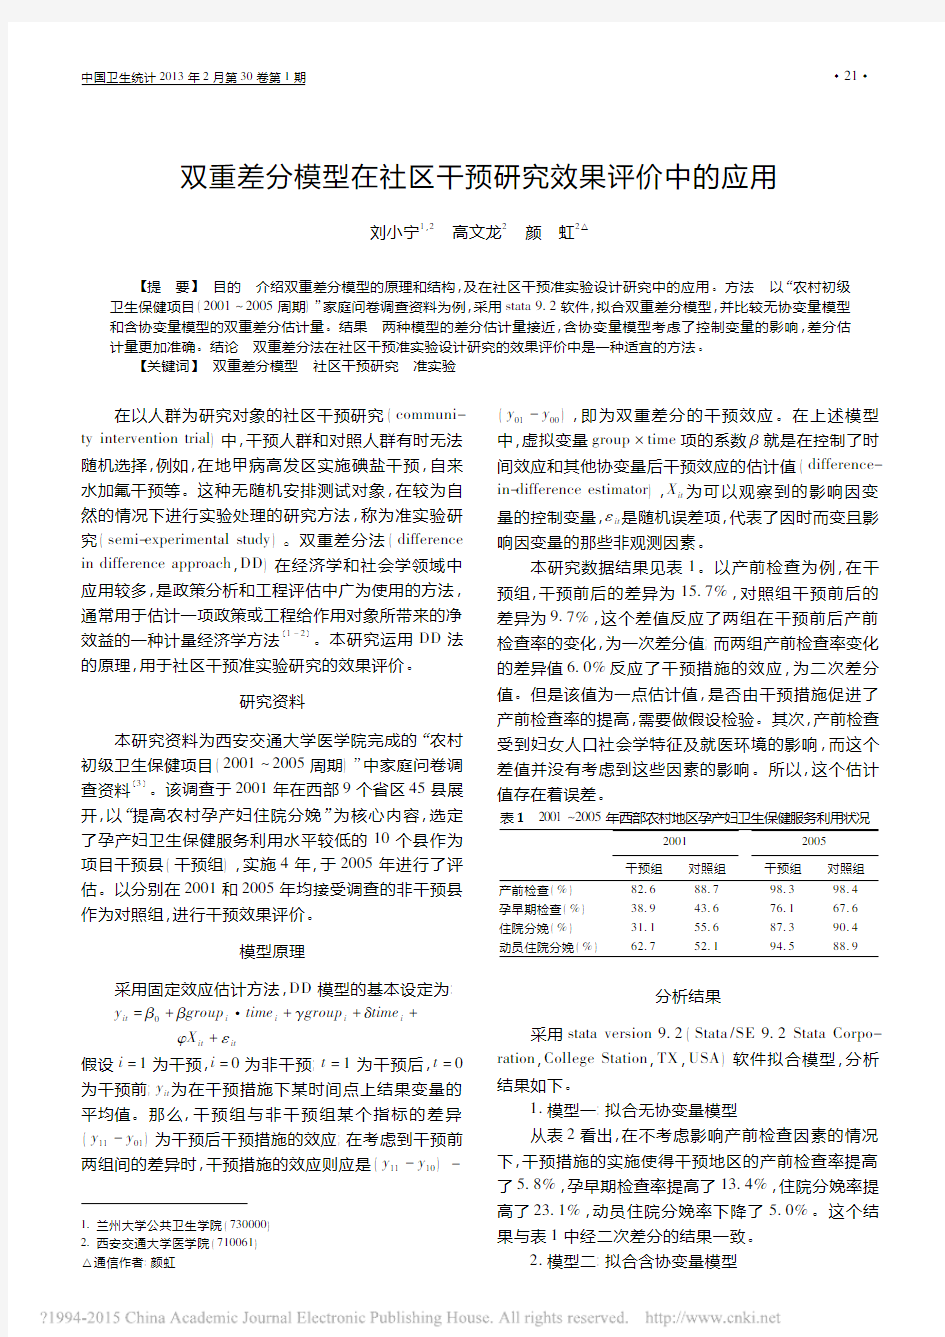 双重差分模型在社区干预研究效果评价中的应用_刘小宁